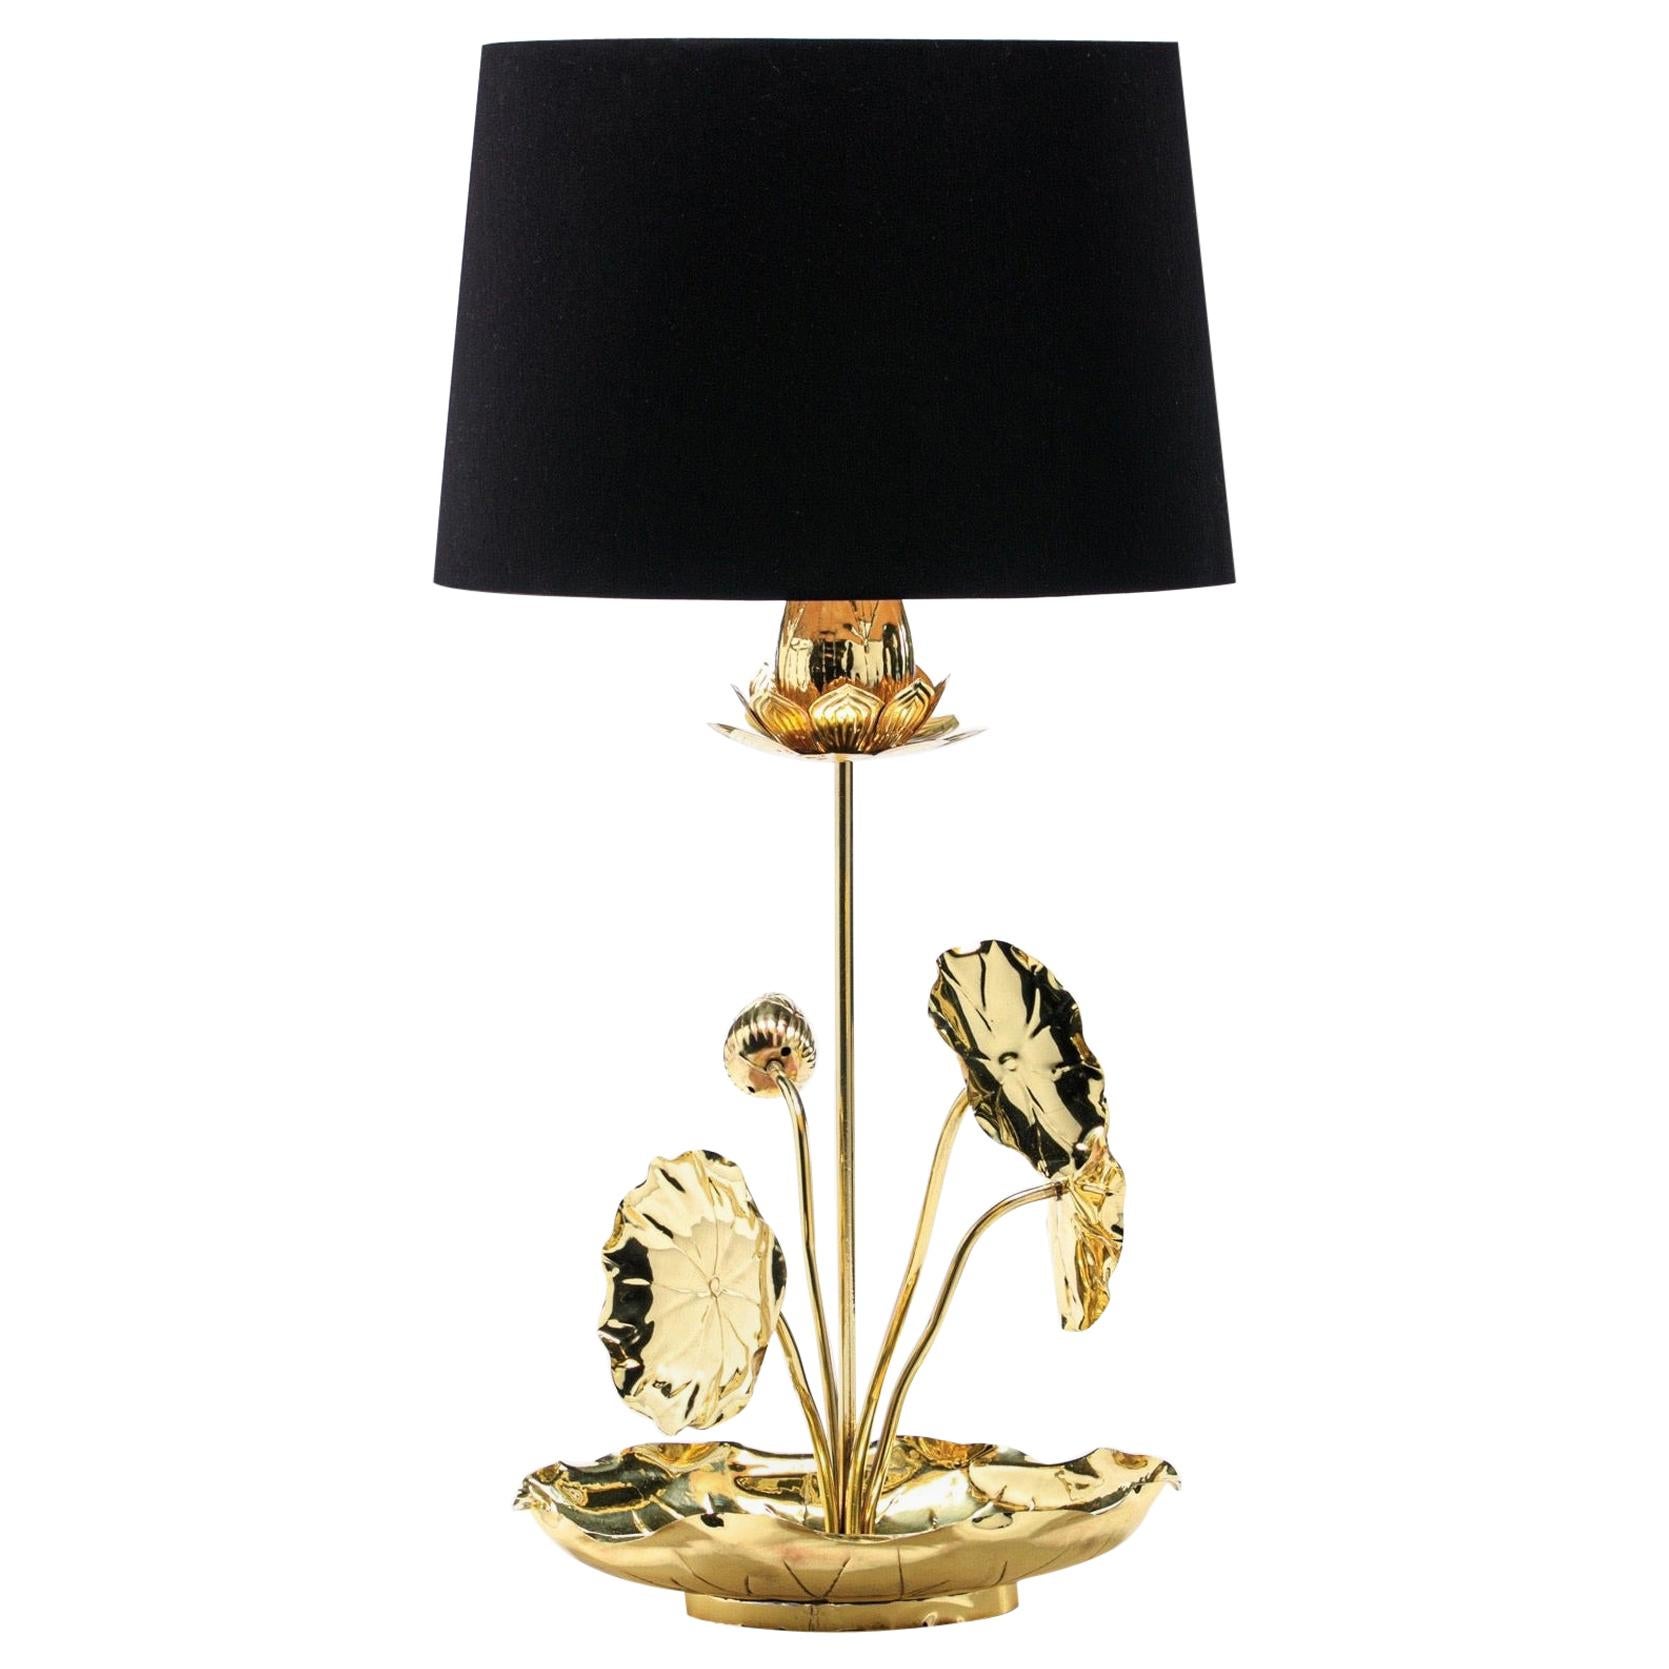 Flower Lamps - 148 For Sale on 1stDibs | vintage flower lamp 